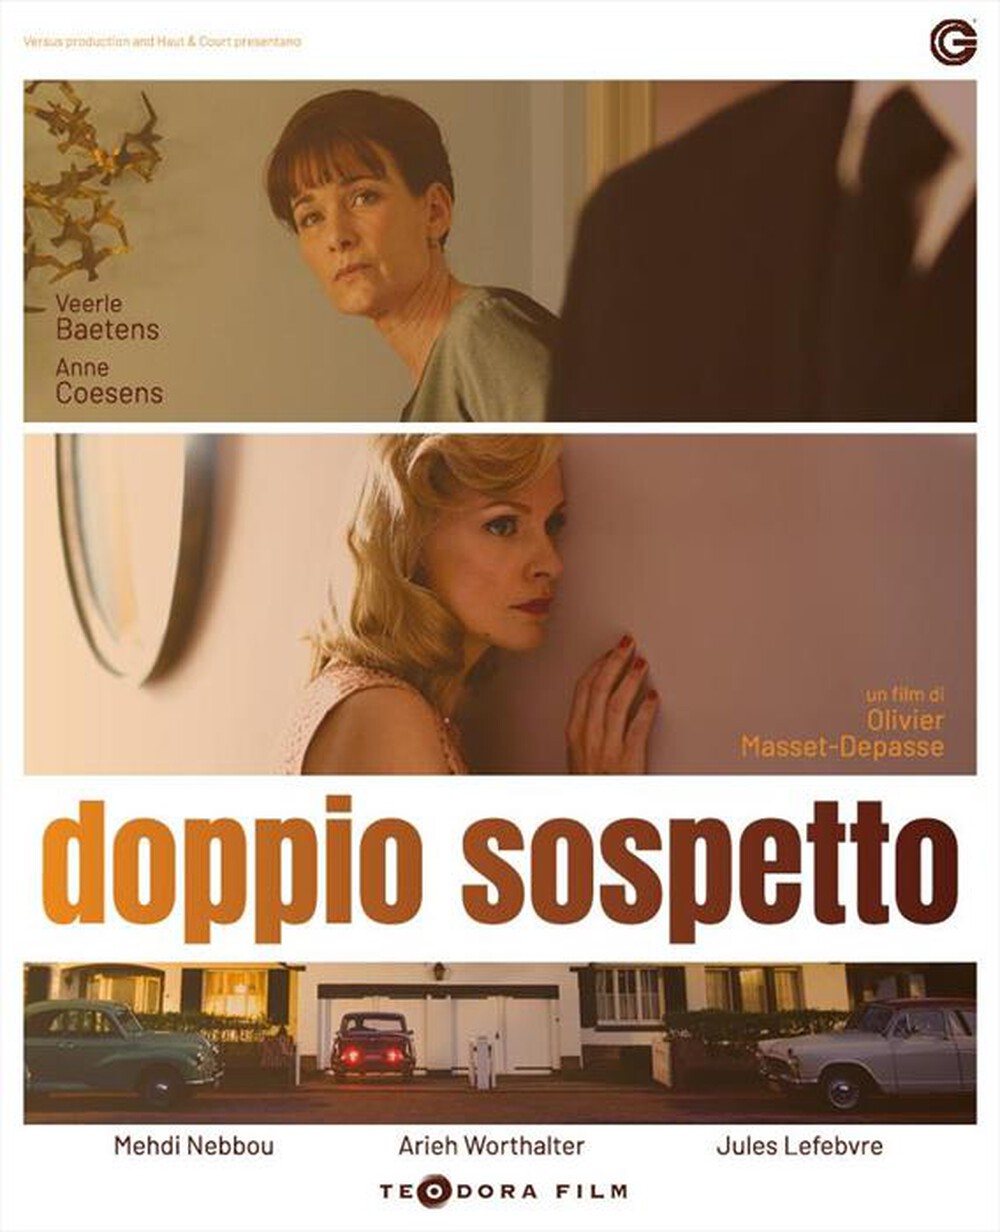 "TEODORA FILM - Doppio Sospetto"